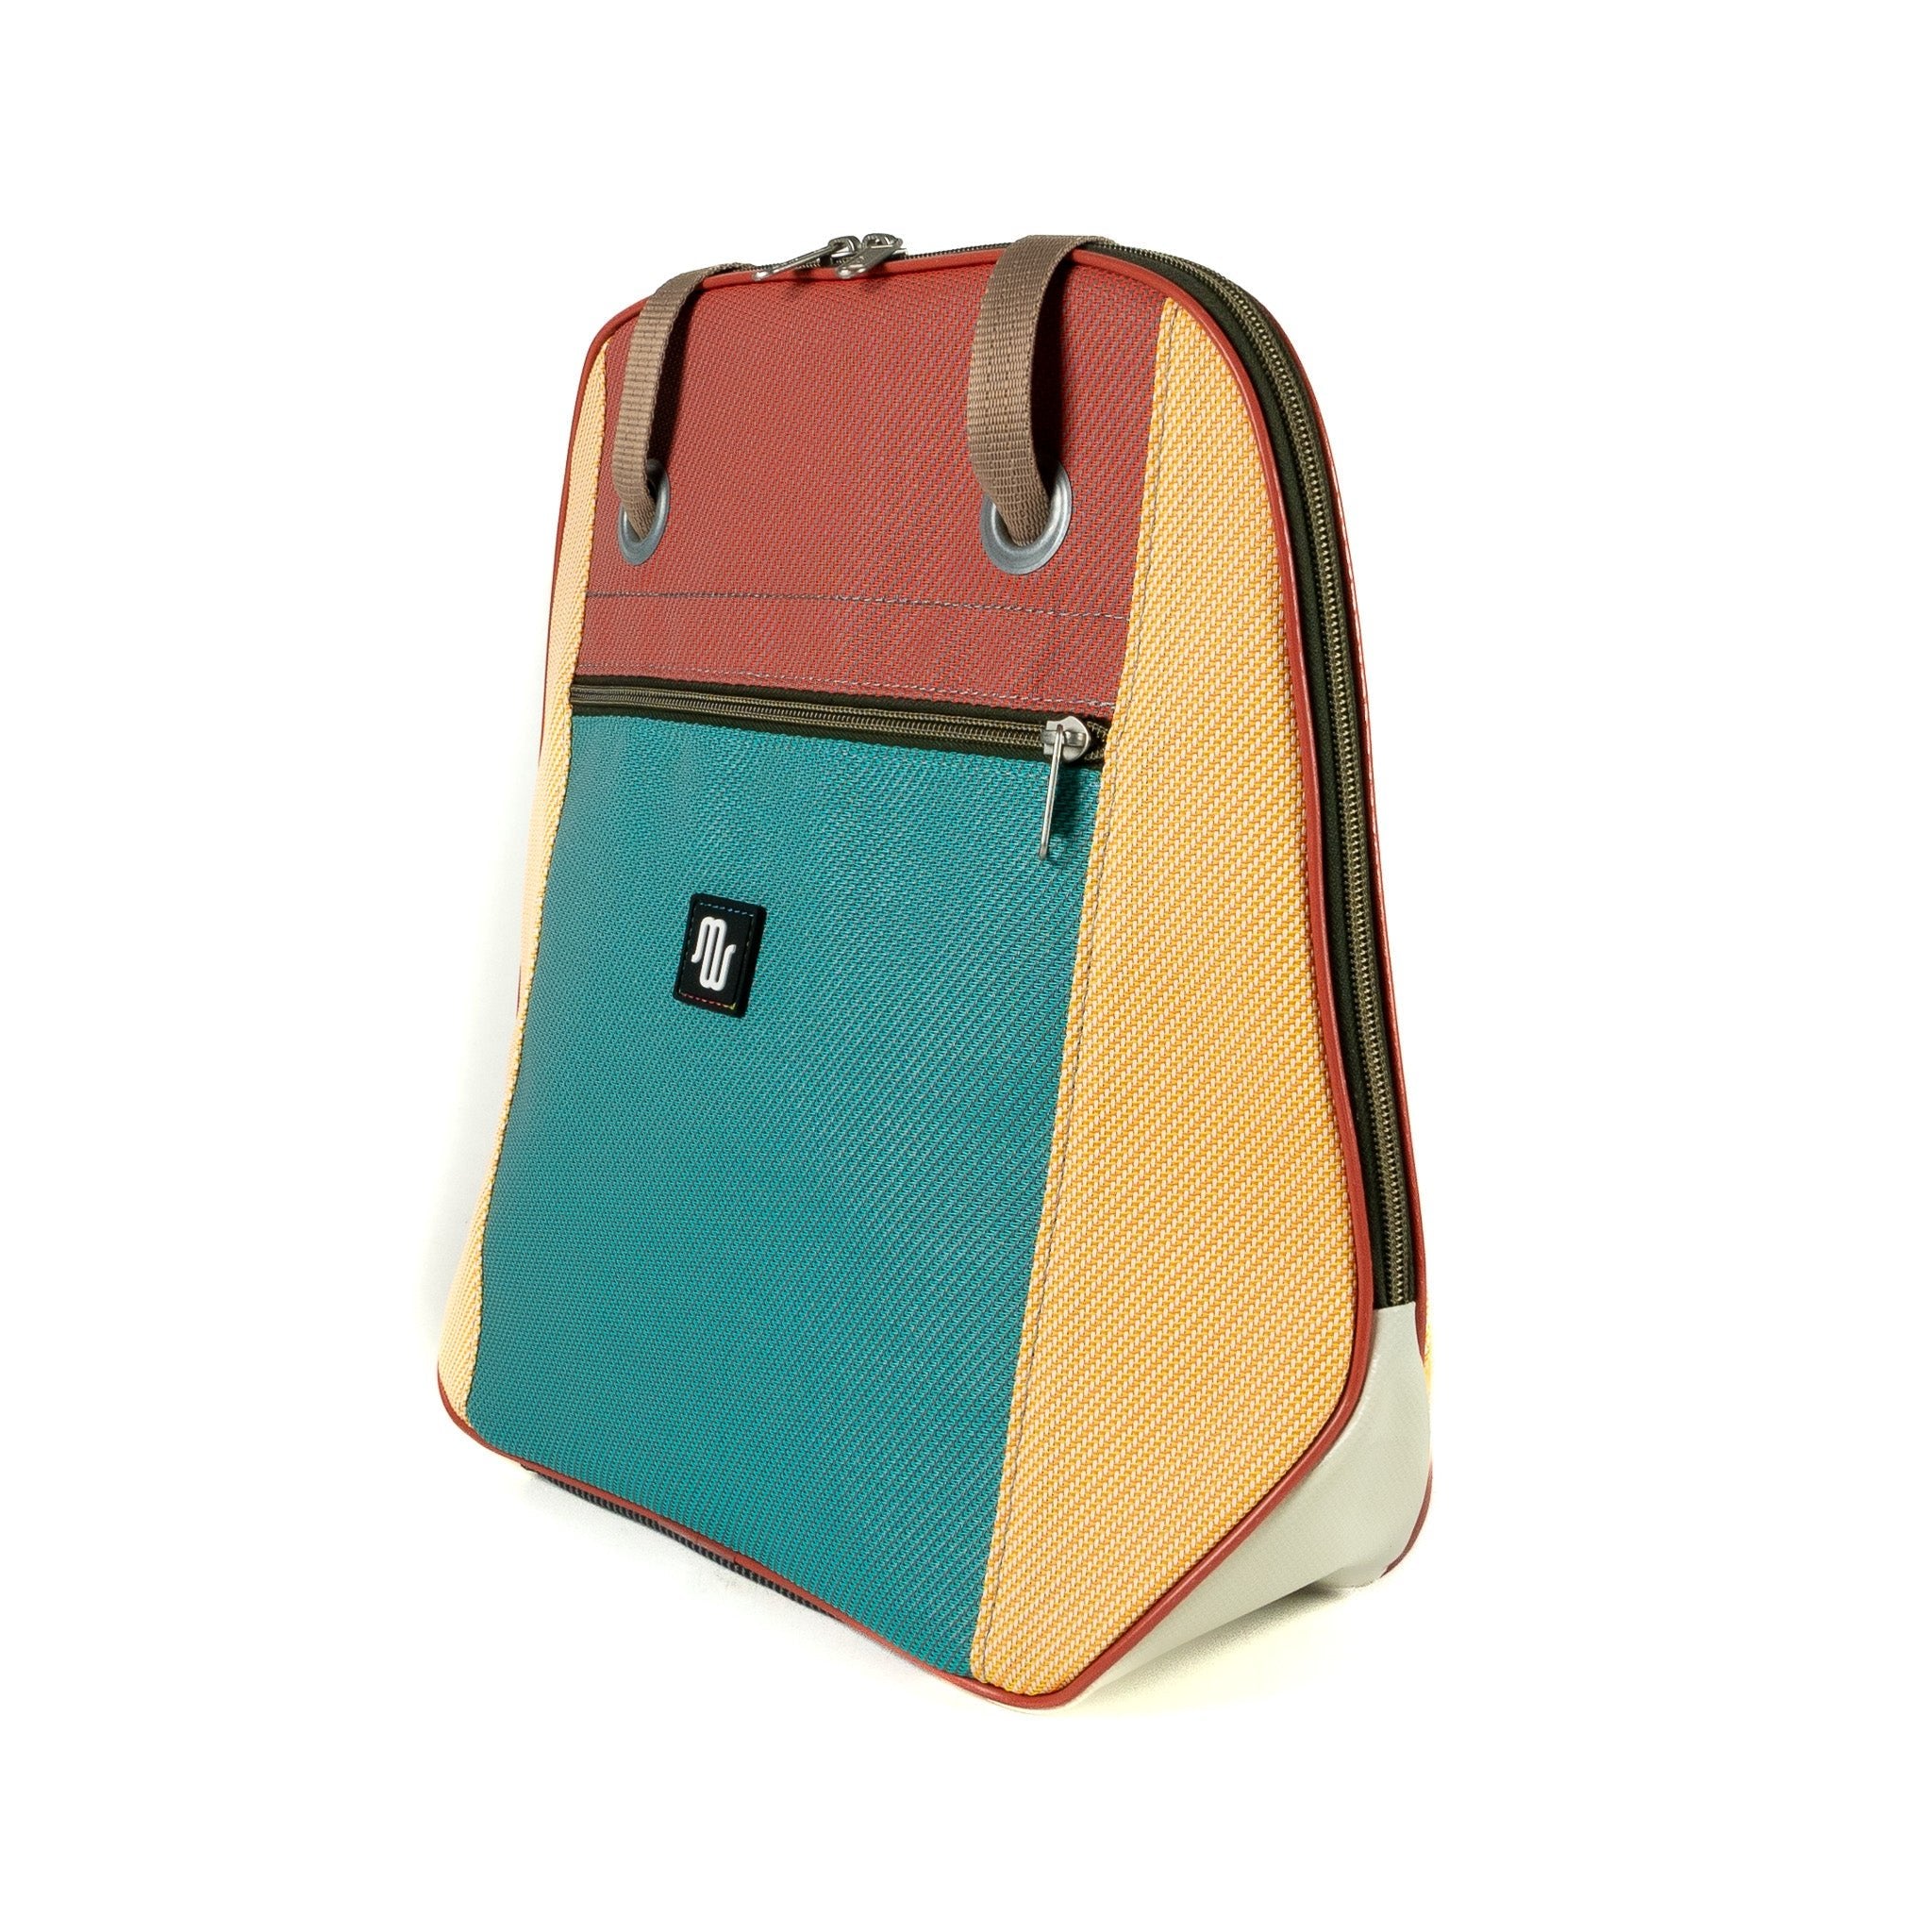 Shoulder Bag - NANA No. 050 - Shoulder bag - medencebag